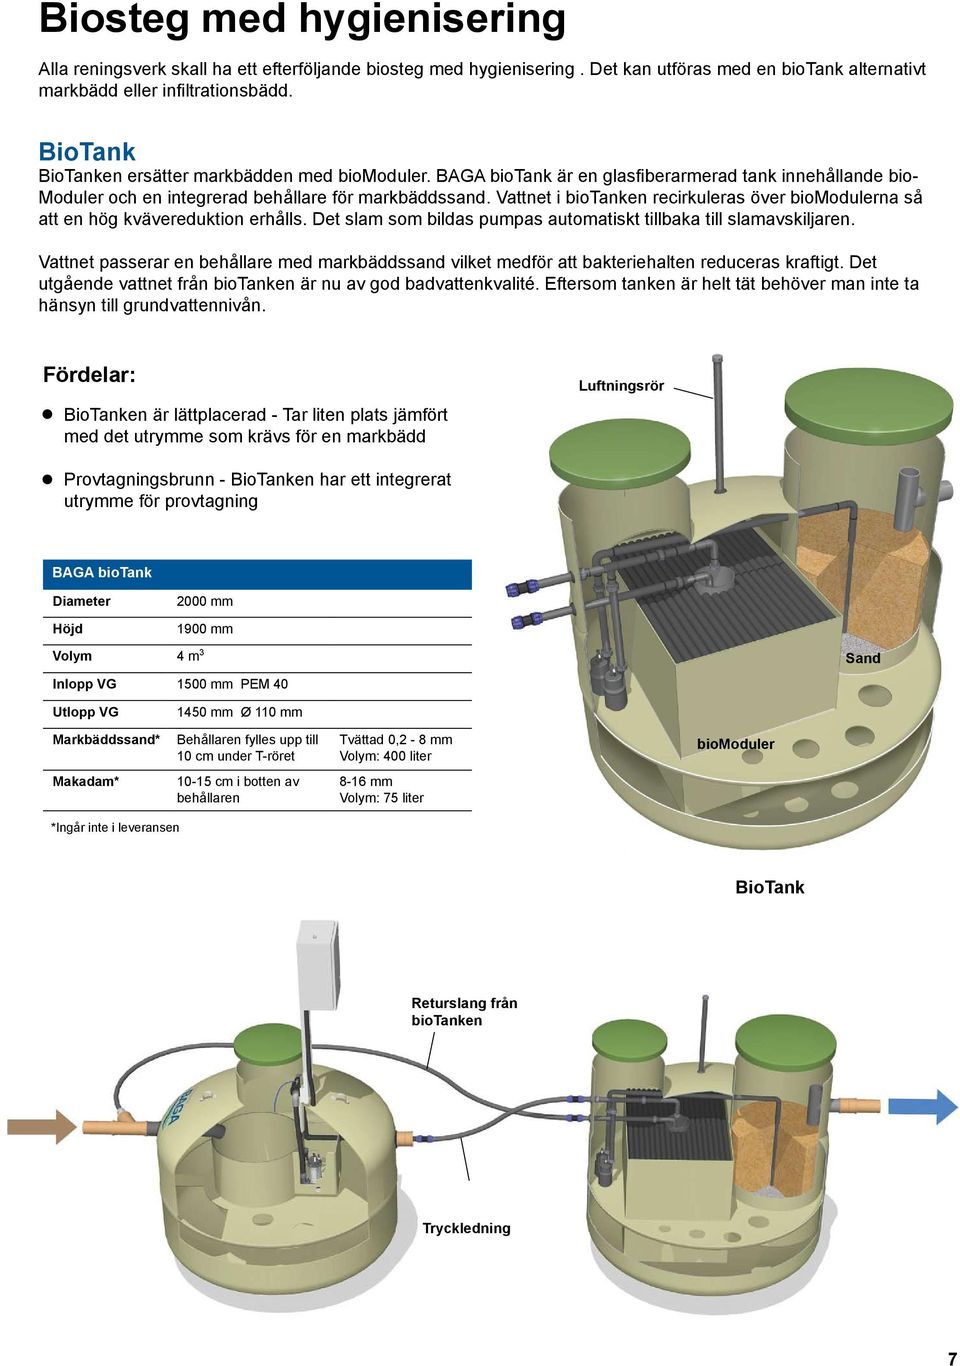 Vattnet i biotanken recirkuleras över biomodulerna så att en hög kvävereduktion erhålls. Det slam som bildas pumpas automatiskt tillbaka till slamavskiljaren.